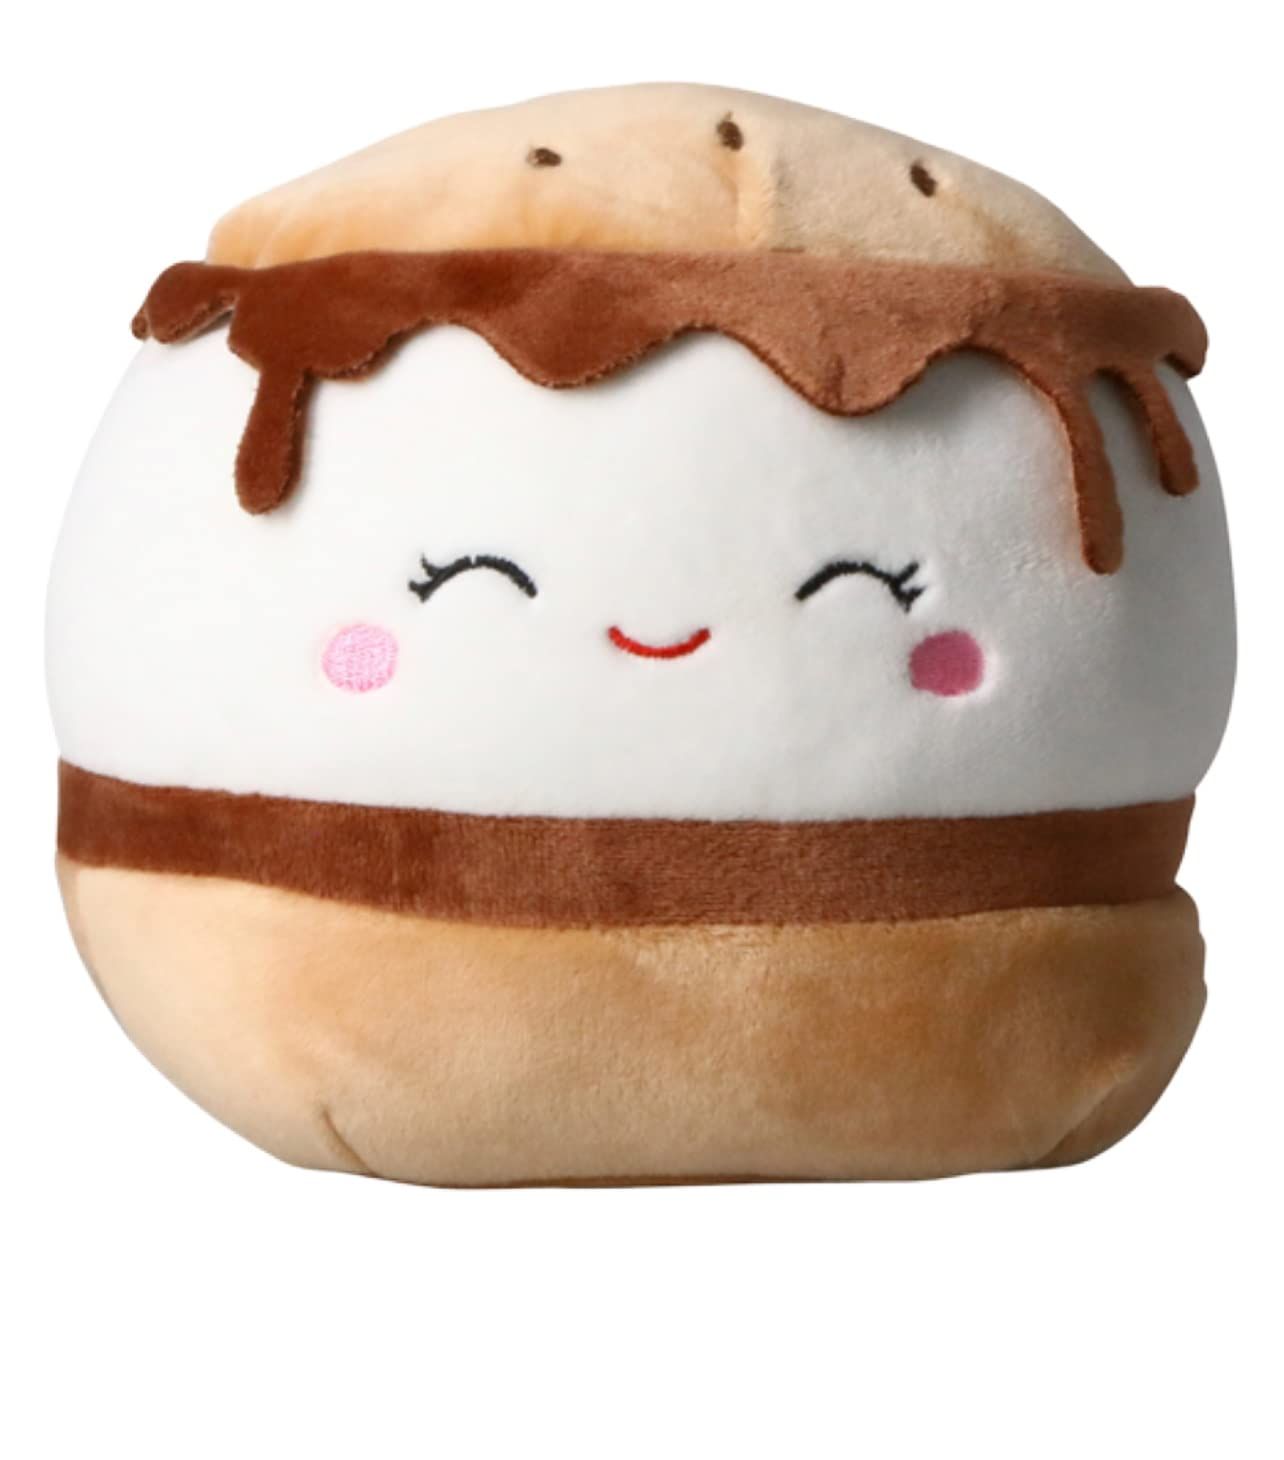 Squishmallows Oficial Kellytoy Food Plush Toys Soft Plush Animal (7.5 Inch, Carmelita Smores) | Amazon (US)